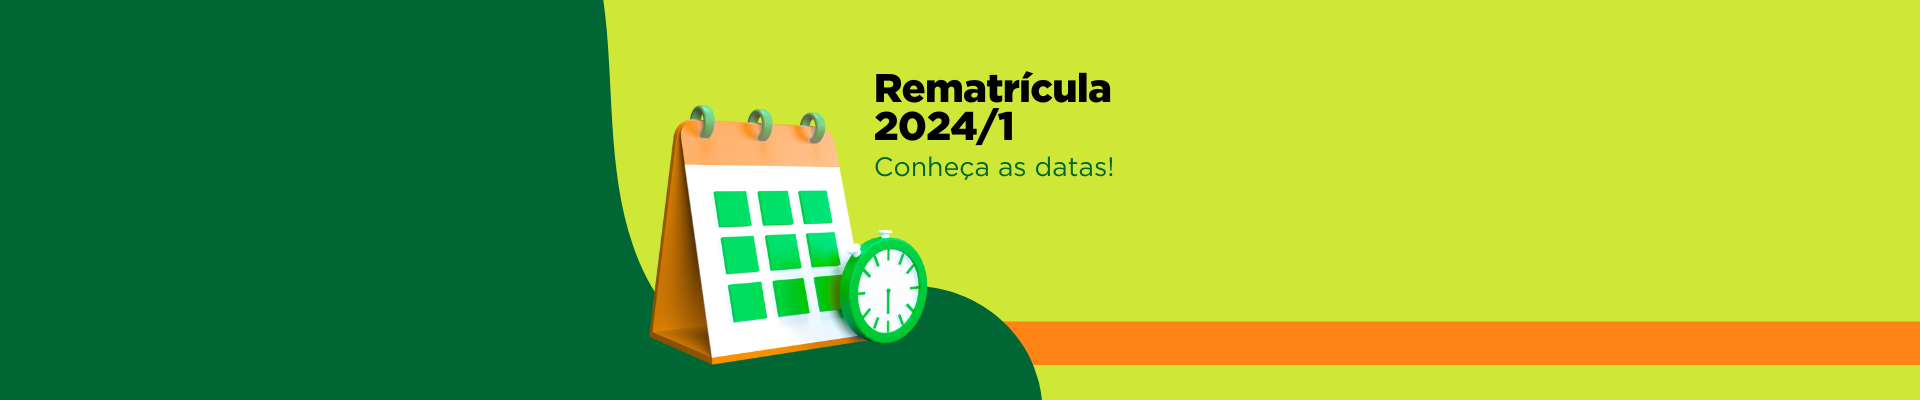 Imagem com fundo verde. Ao centro, imagem de um calendário. Ao lado dele, lê-se "Rematrículas 2024/1 - Conheça as datas!".